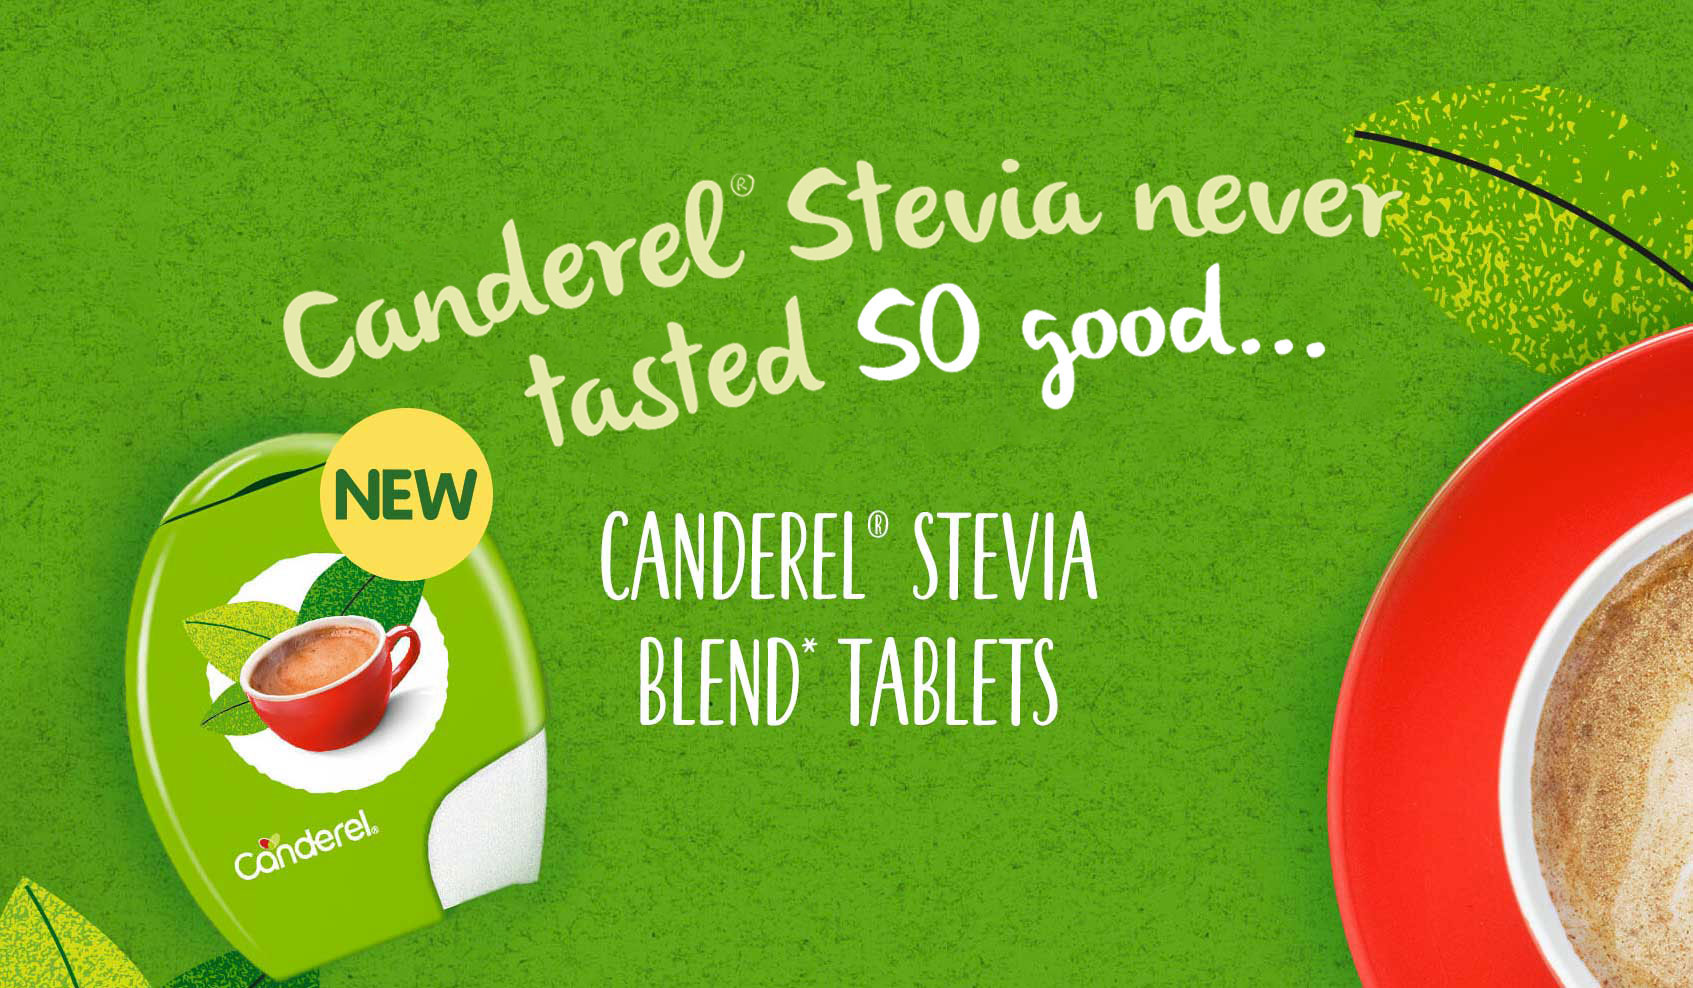 Canderel Stevia never tasted so good. Canderel Stevia Blend tablets. Large coffee and Canderel Stevia Blend tablets packshot